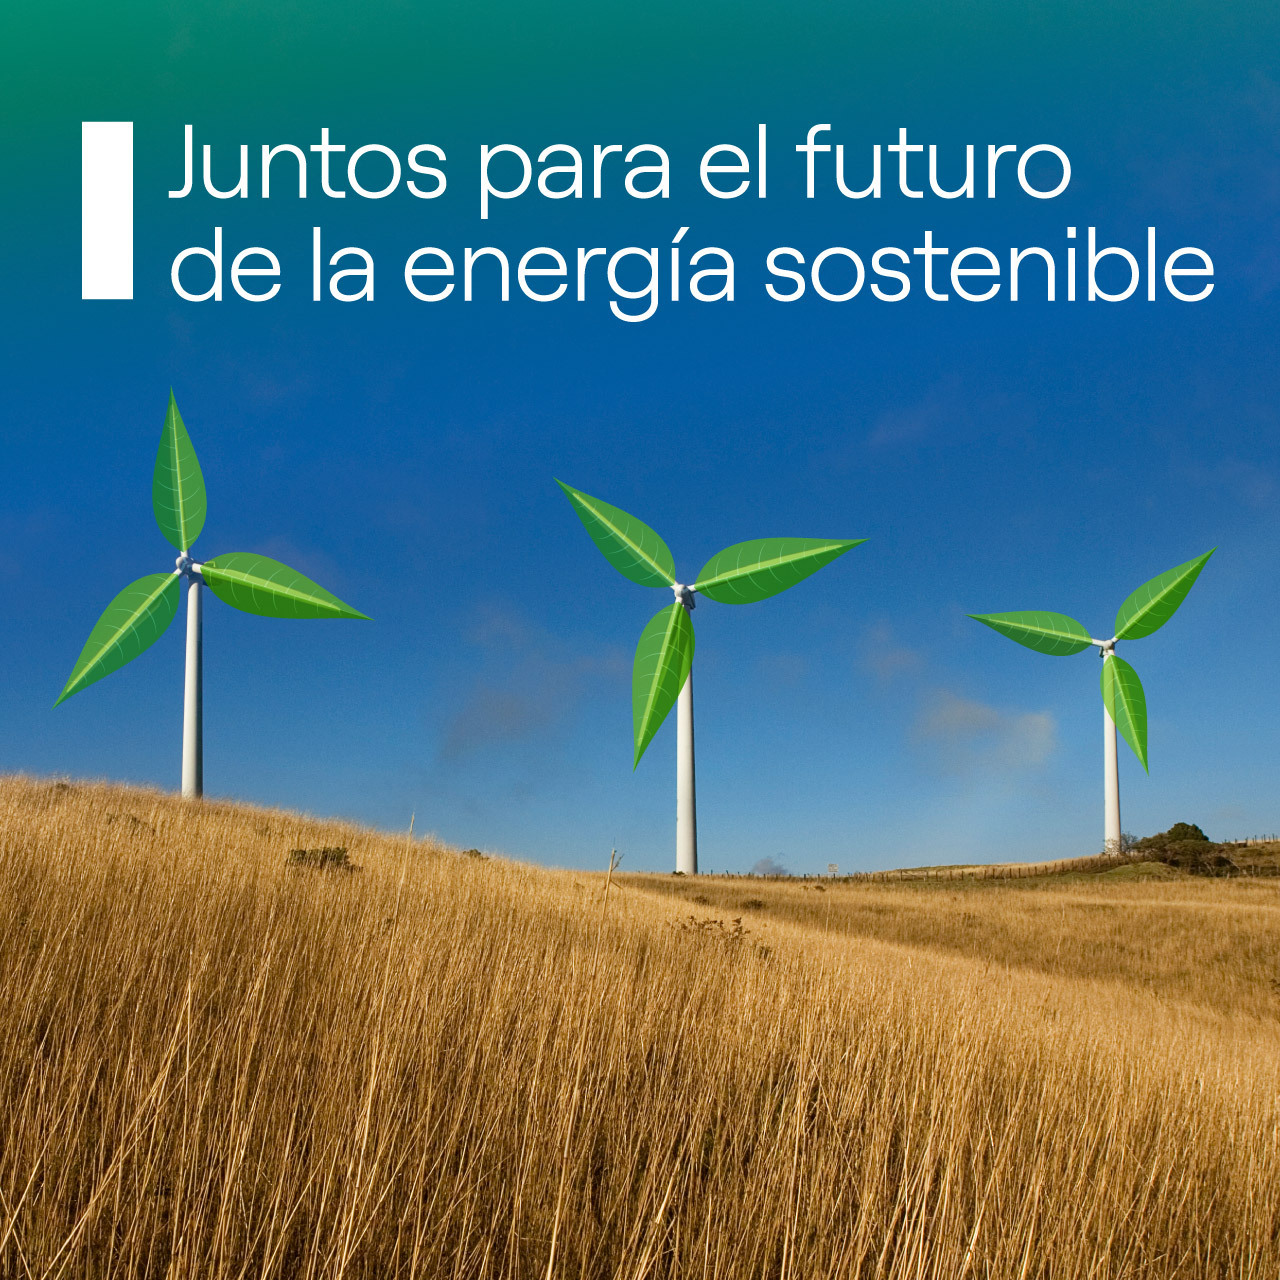 Juntos para el futuro de la energia sostenible